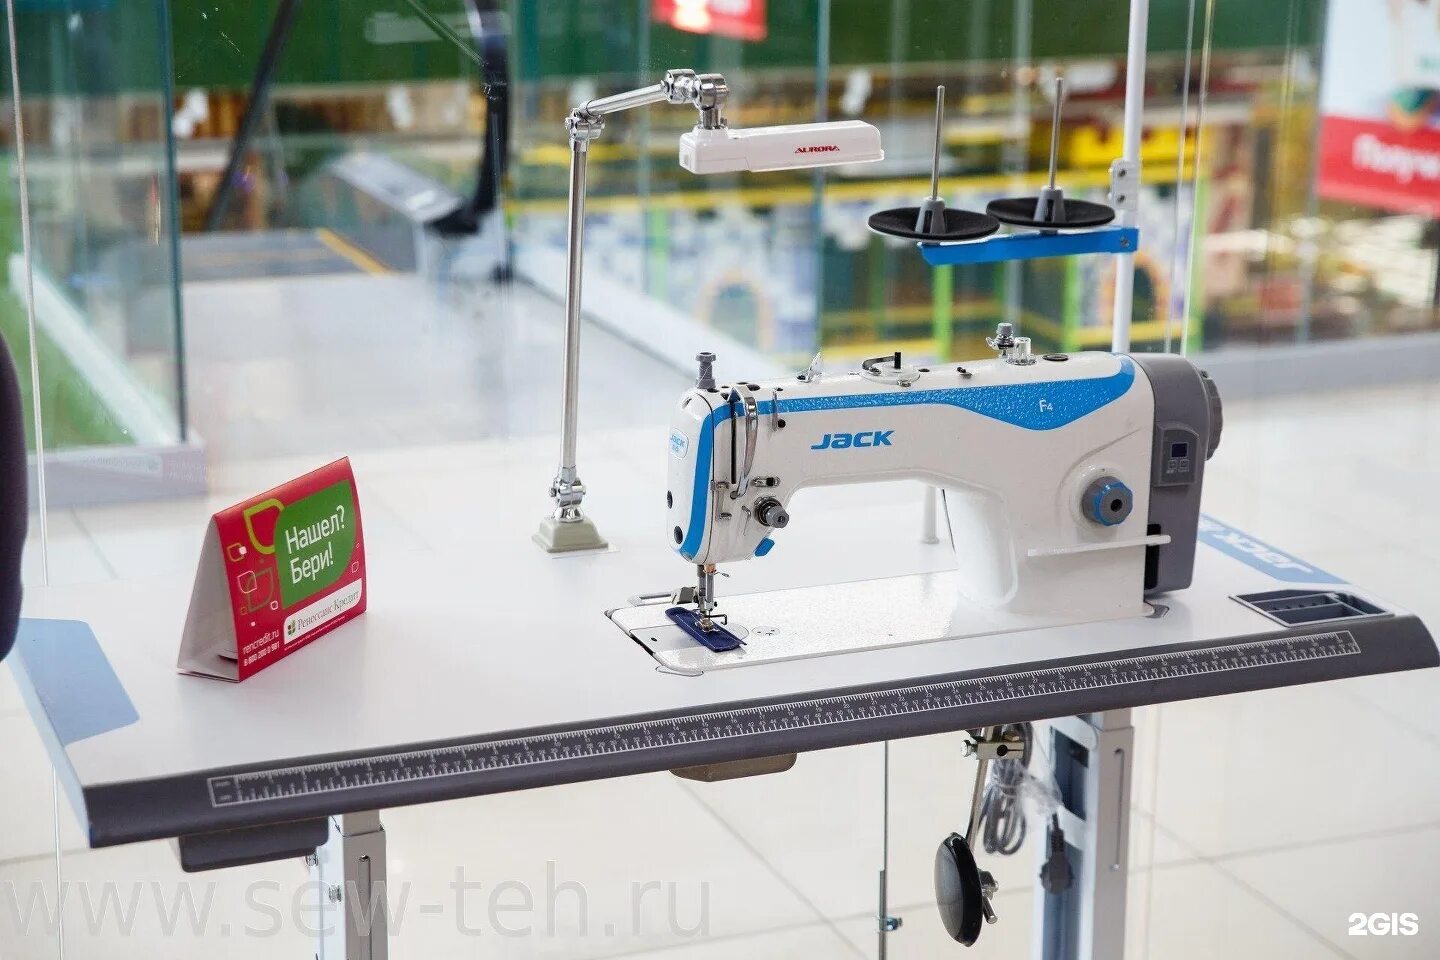 Швейная машинка джак. Промышленная швейная машина Джек f4. Промышленная швейная машина Jack JK-f4. Швейная машина Джак f4. Швейная машинка Джек f4.